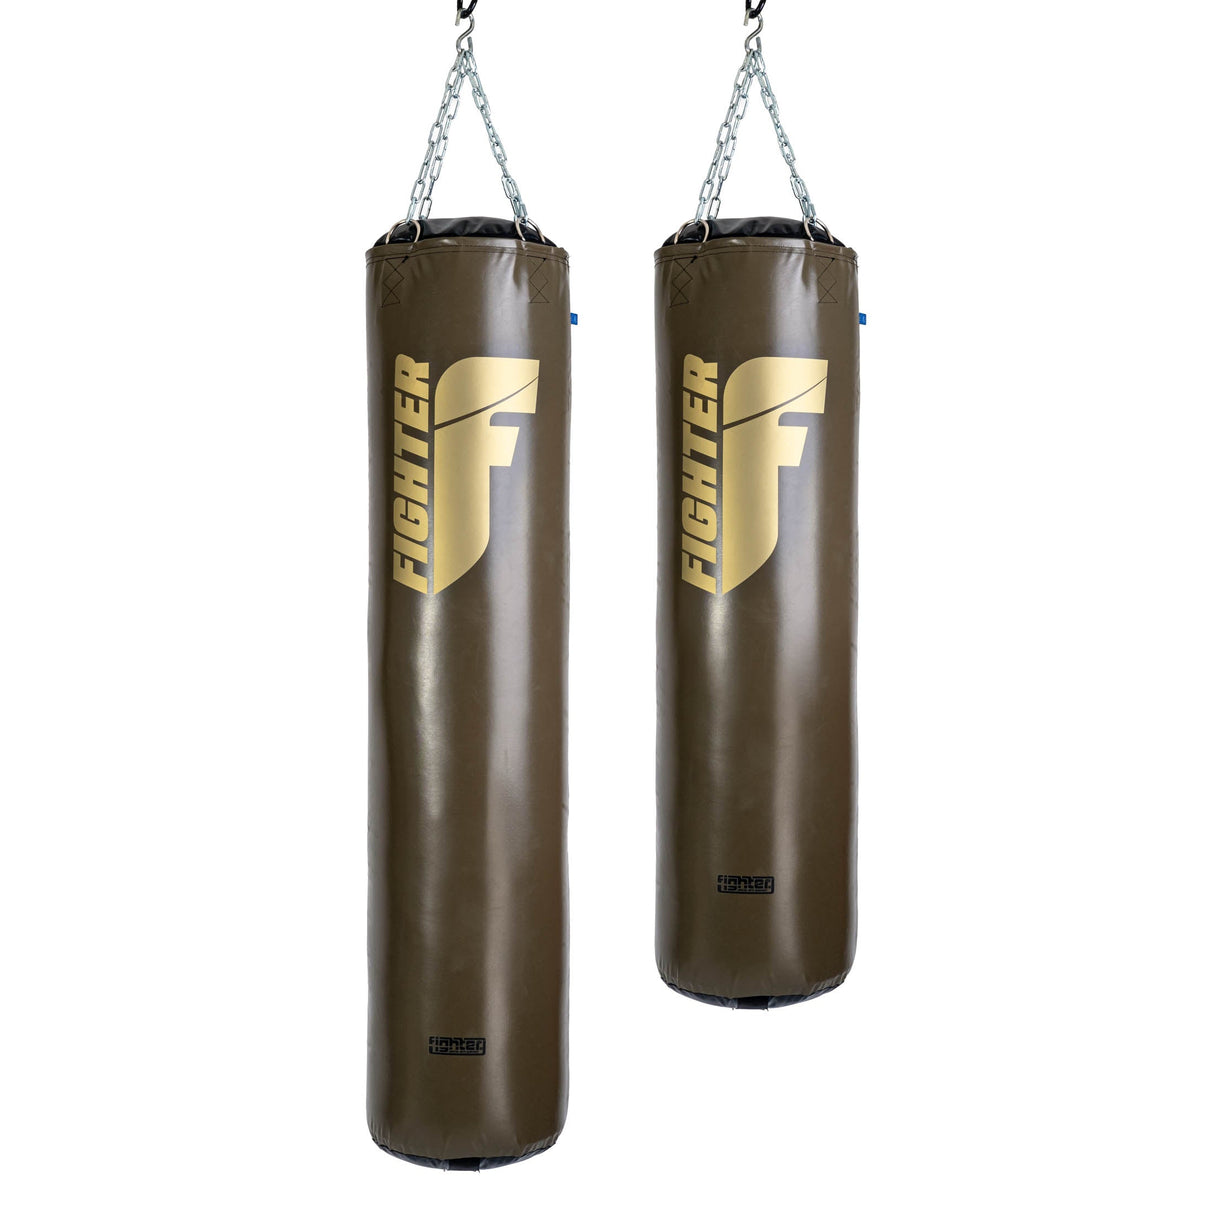 Sac de boxe Fighter Professional - kaki/or, 150 cm et 180 cm ; diamètre 36cm